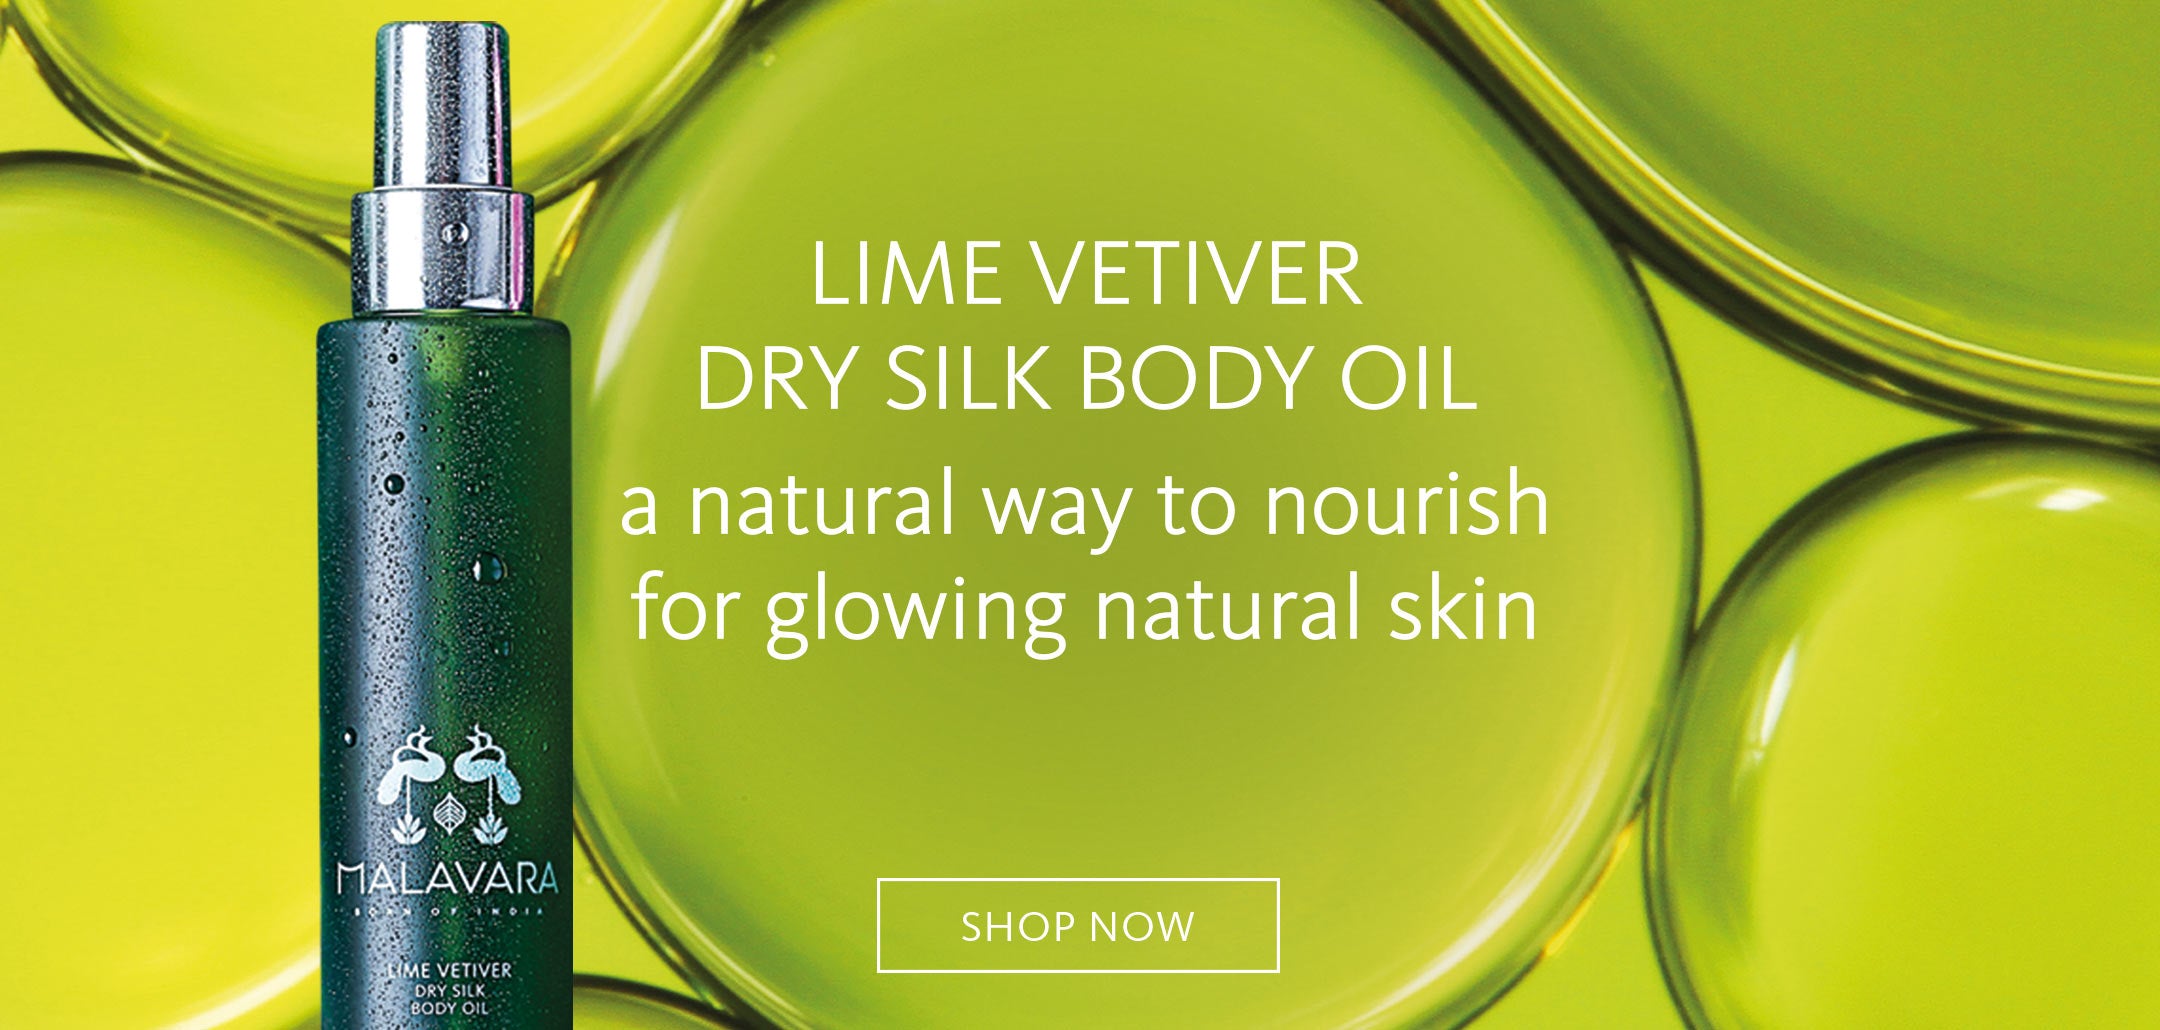 Malavara Lime Vetiver Dry Silk Body Oil